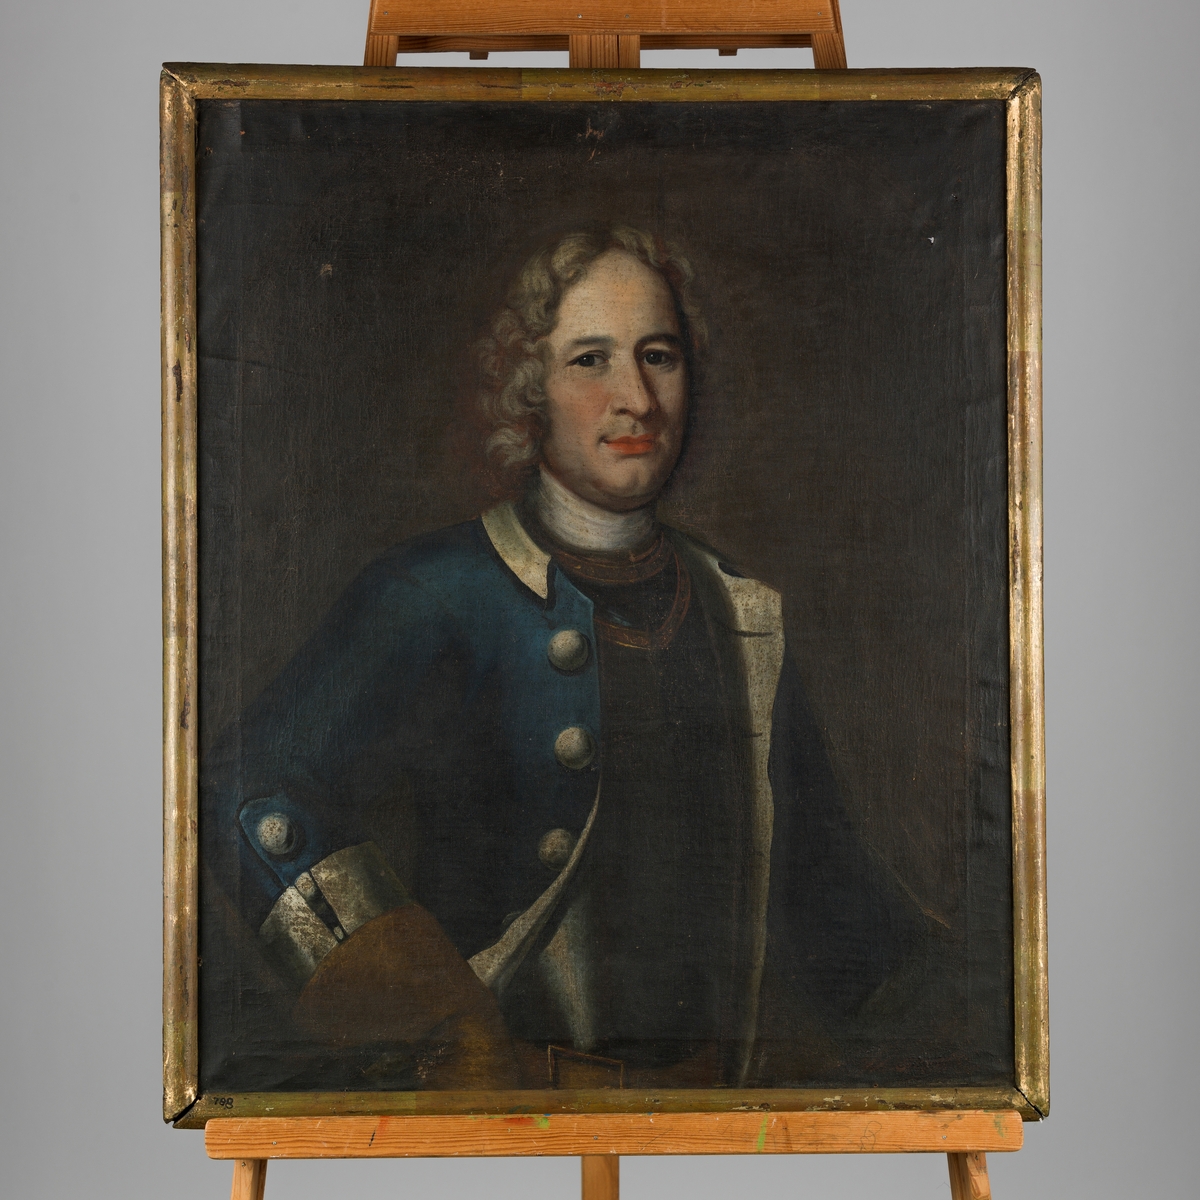 Oljemaleri med portrett av mann i uniform (Jørgen Christopher von Koppelow, 1684-1770)